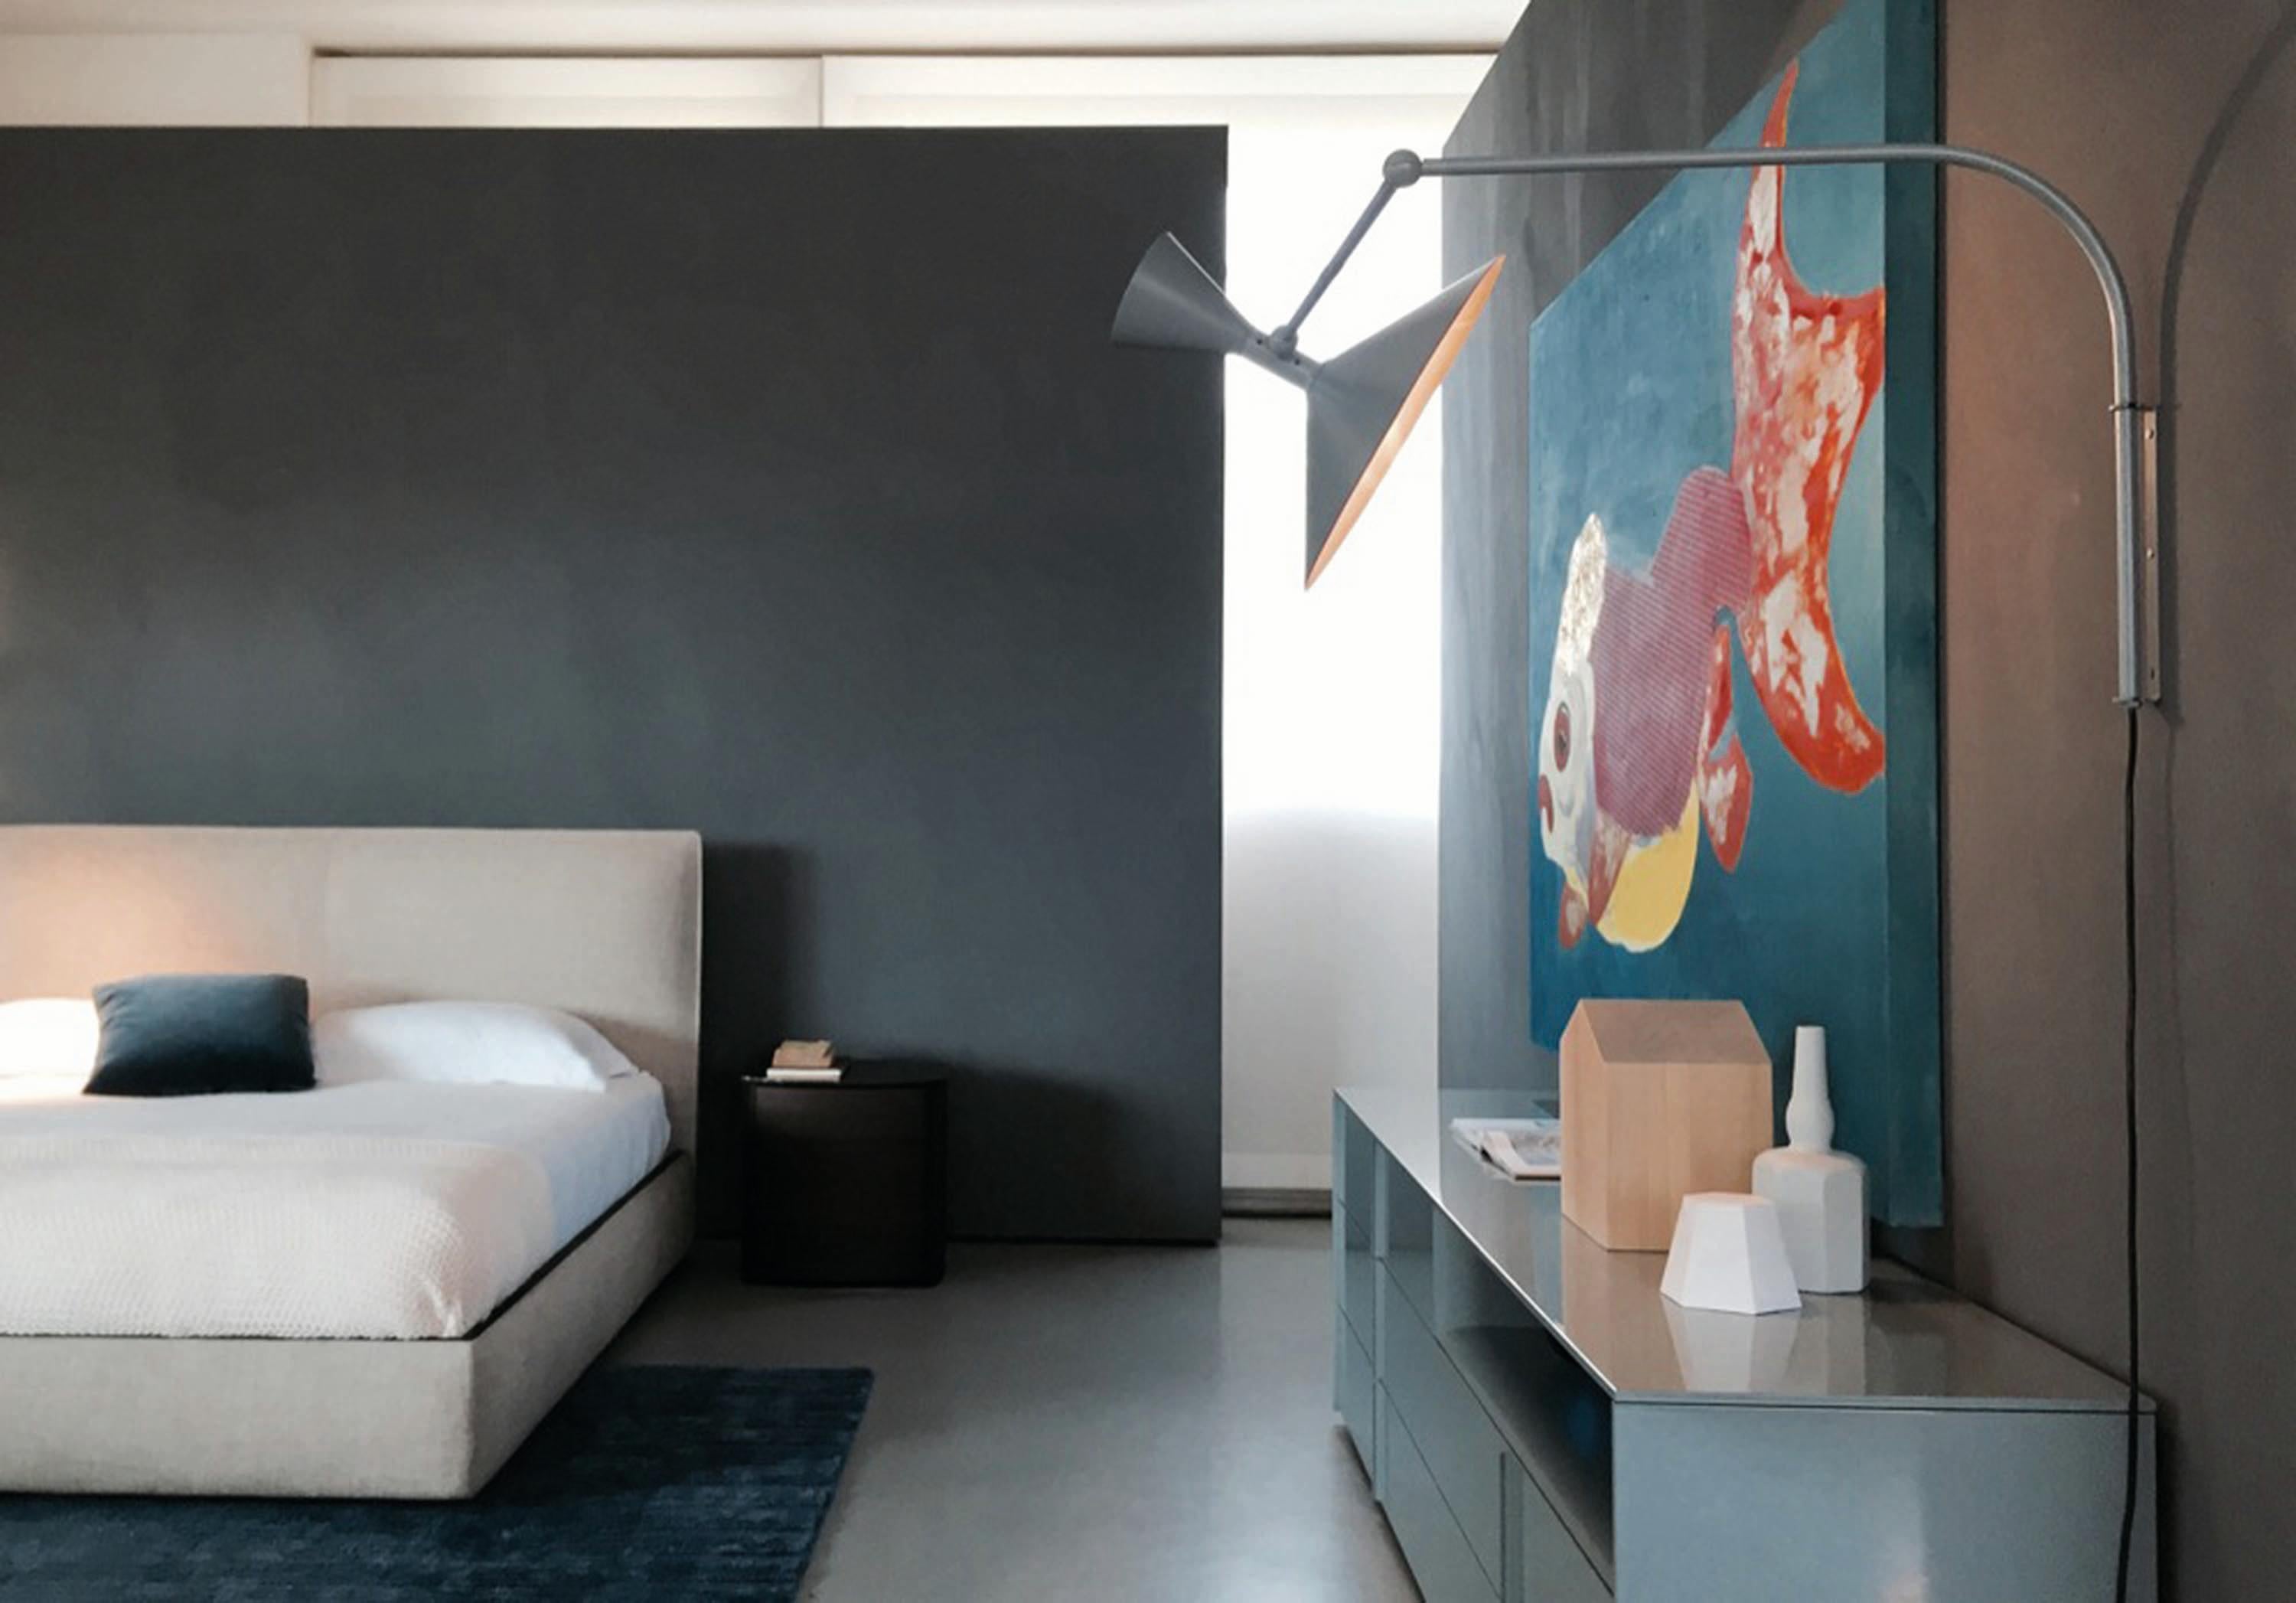 Applique Le Corbusier Lampe de Marseille pour Nemo en gris mat.

Conçue par Le Corbusier pour l'Unité d'Habitation de Marseille en 1949/1952, cette applique est à la fois architecturale et fonctionnelle, avec deux articulations réglables sur le bras